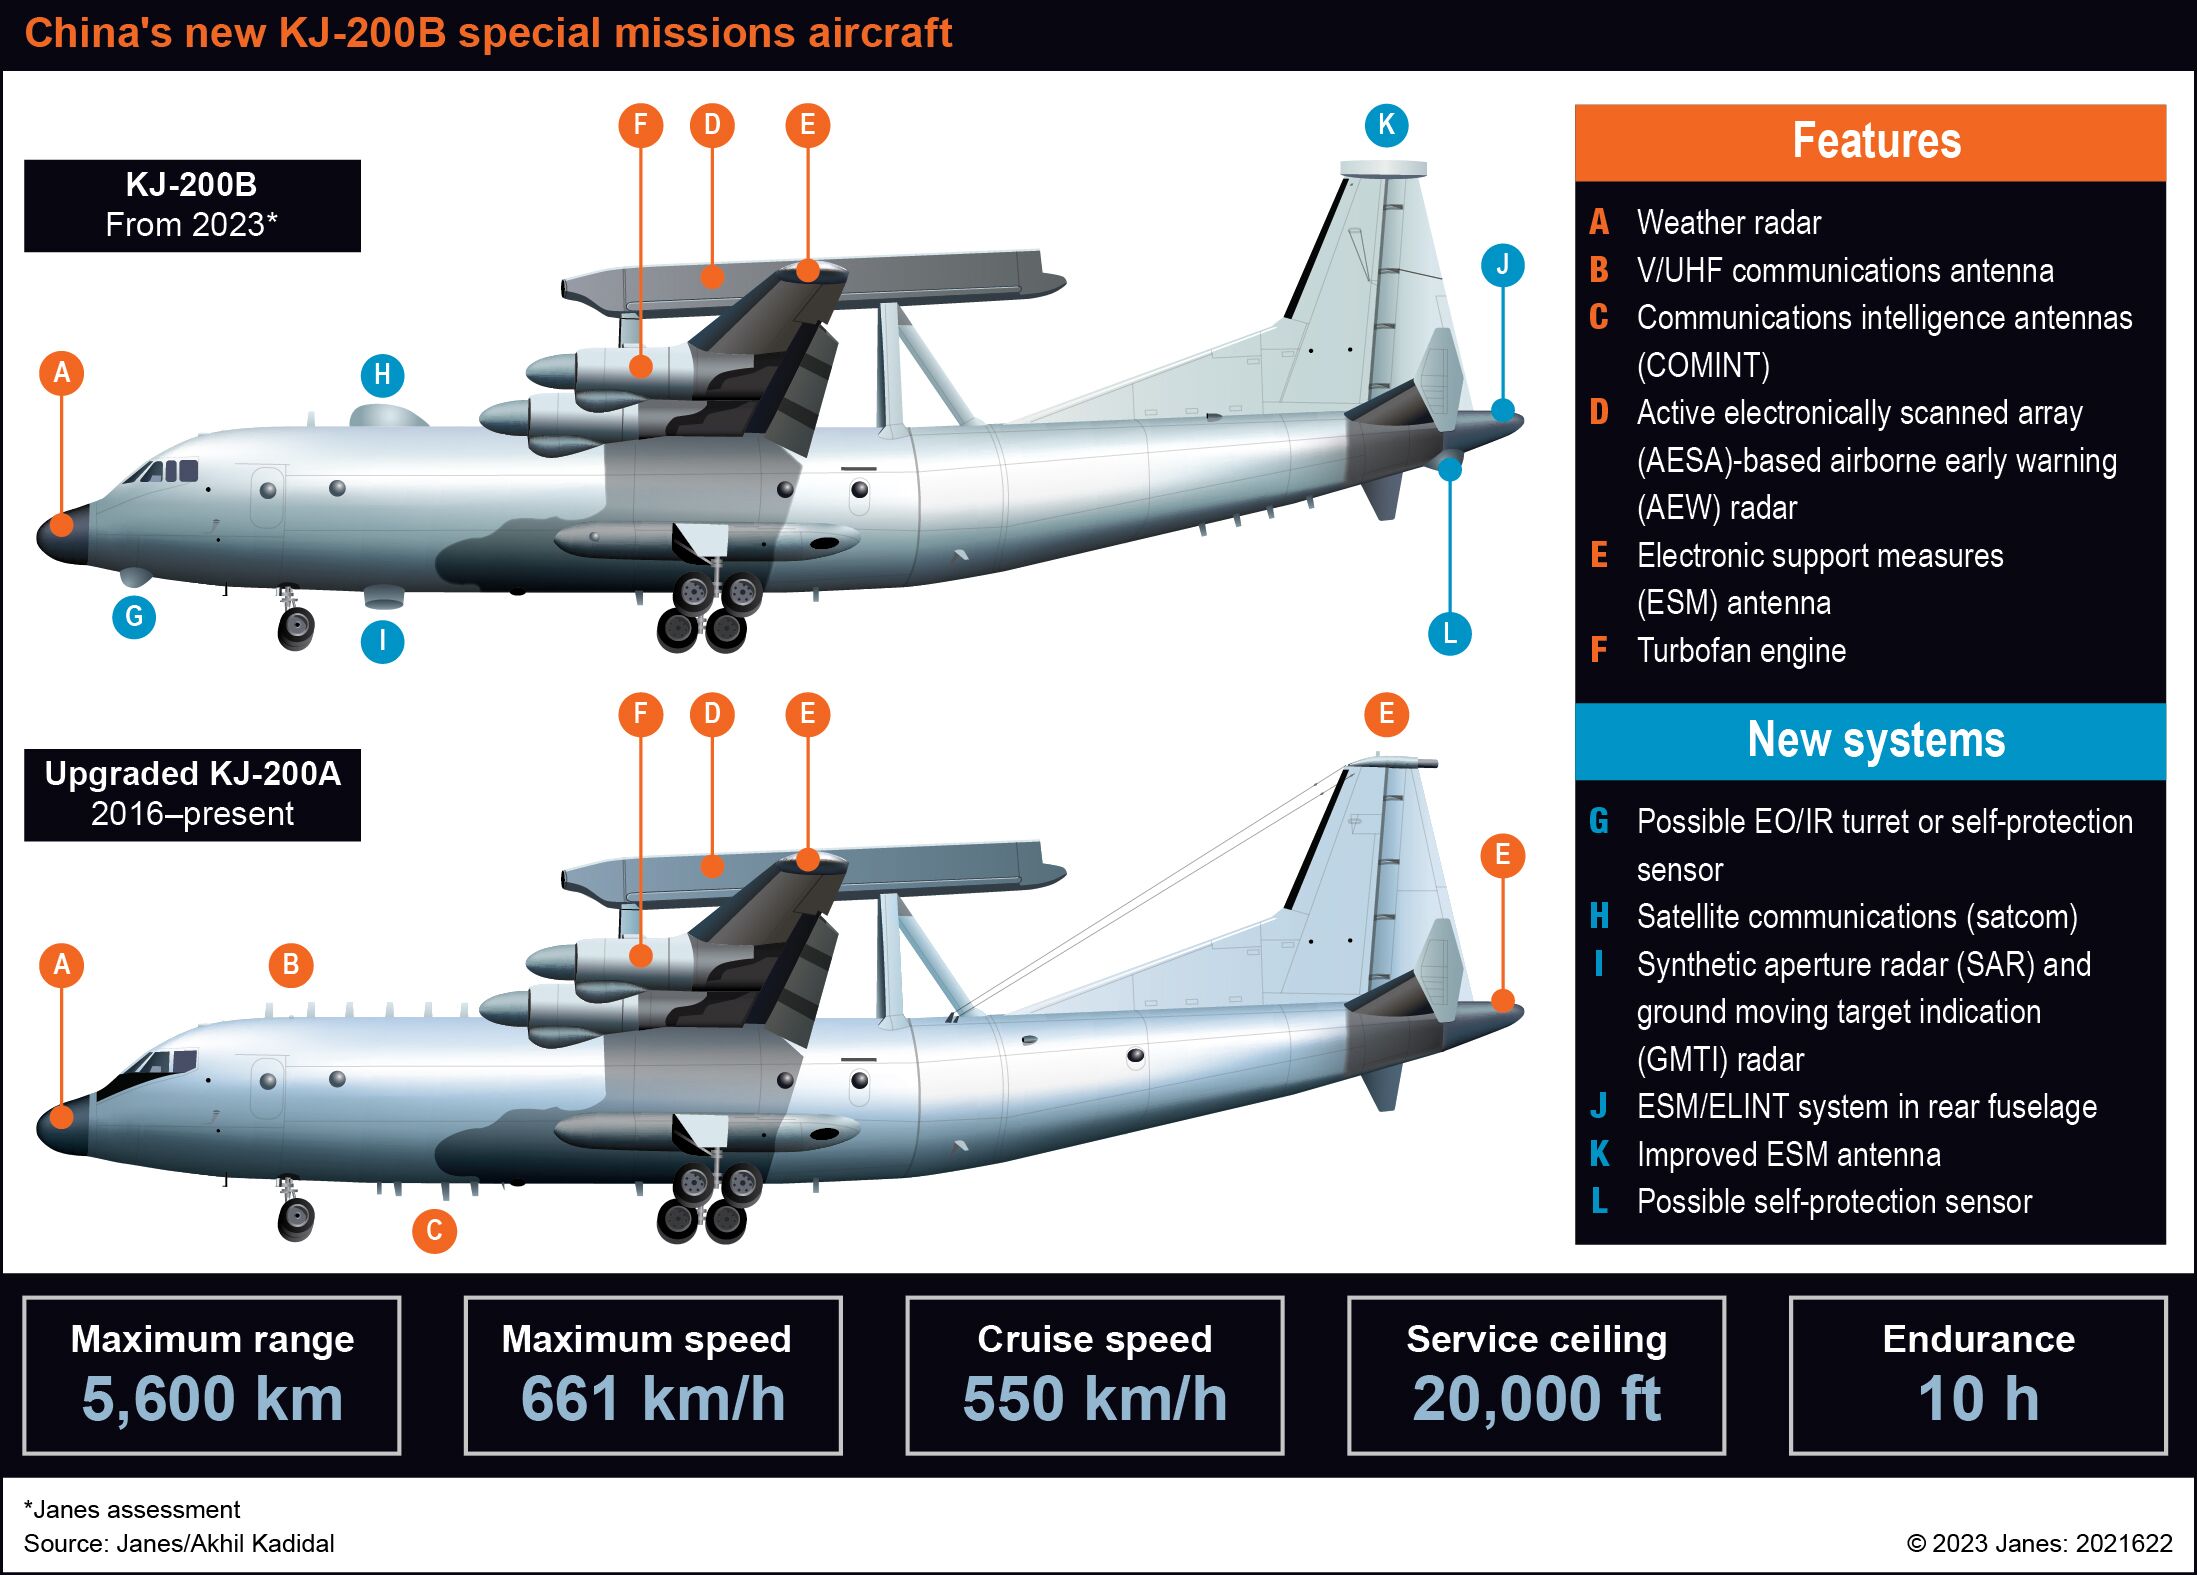 Trung Quốc đánh giá máy bay đặc nhiệm KJ-200 cải tiến